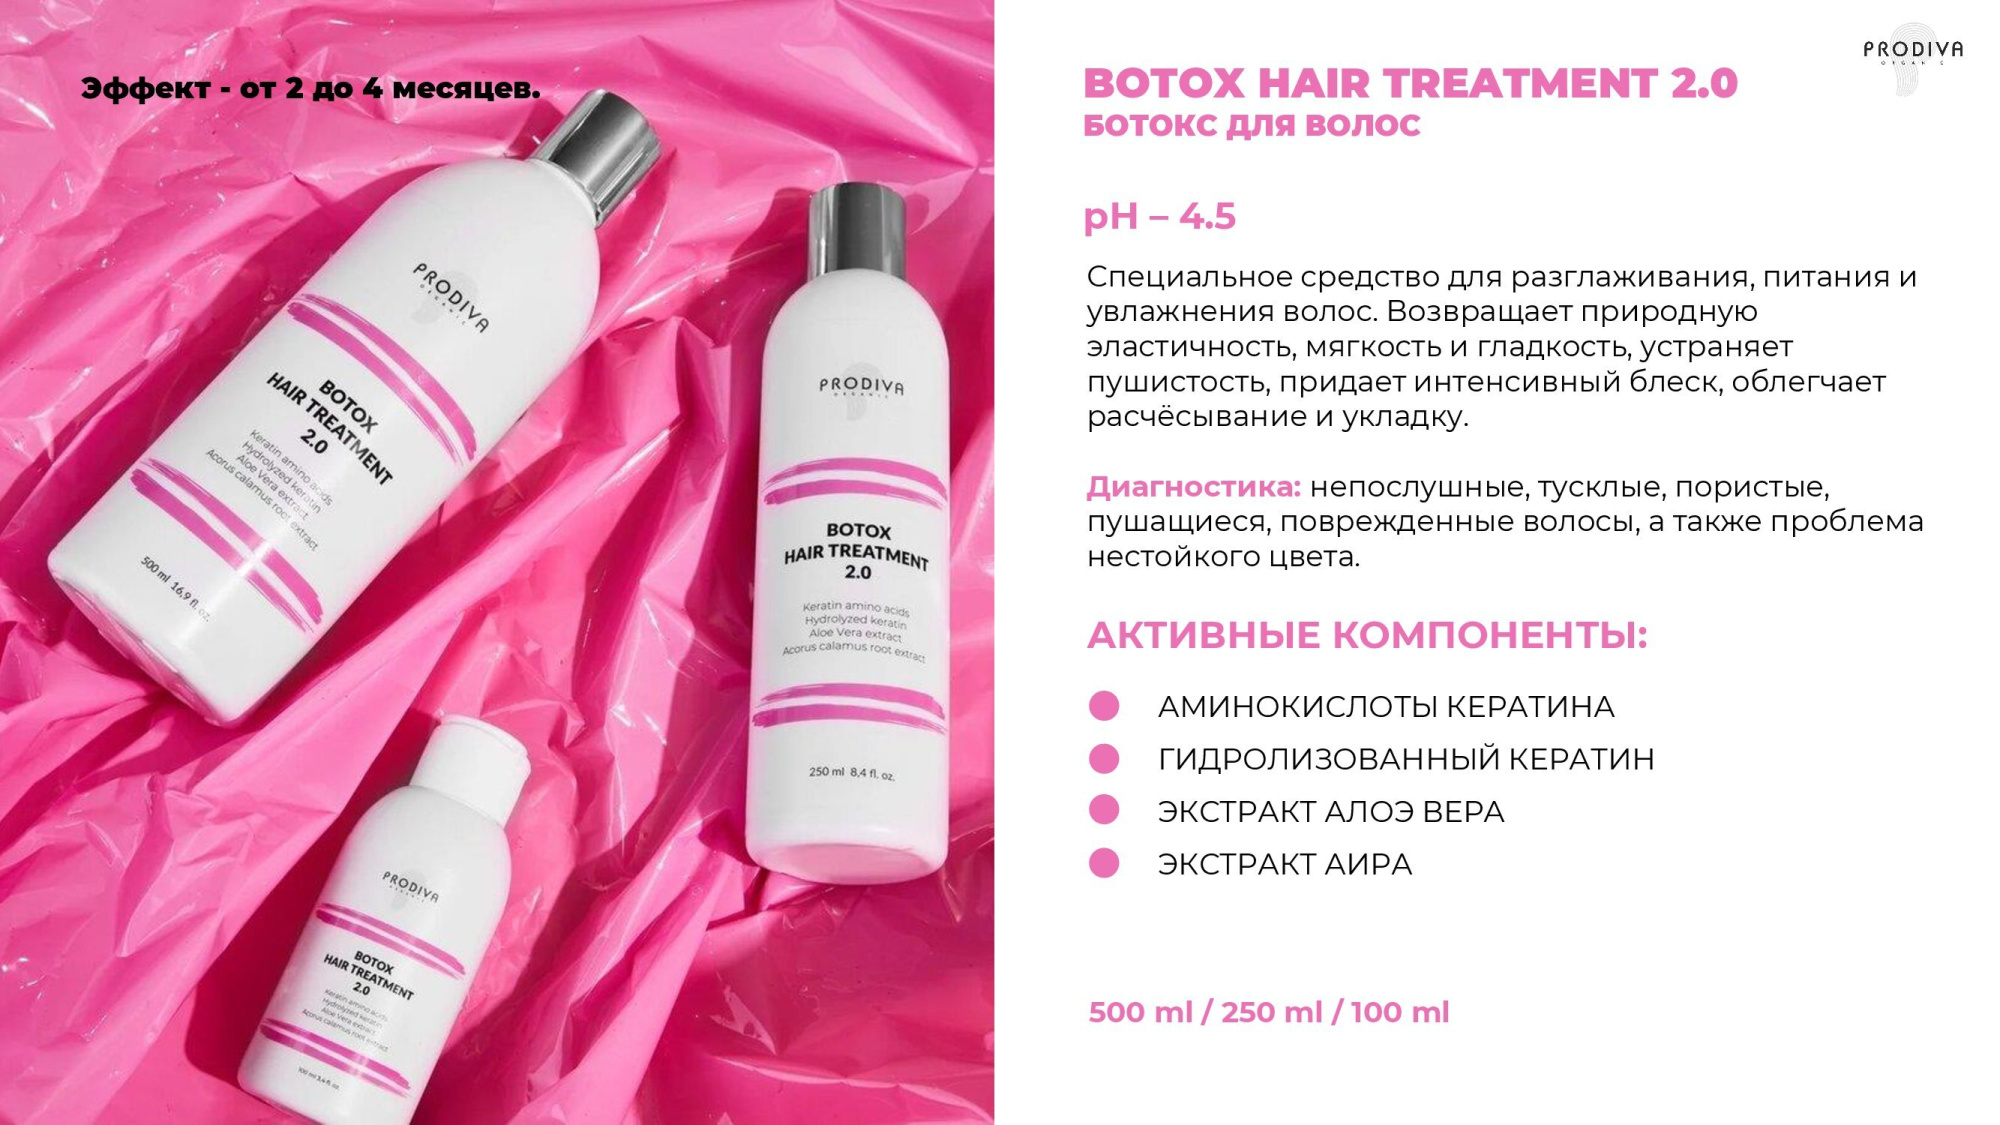 Глянцевый ботокс для волос PRODIVA Botox Hair Treatment 2.0, 100 мл